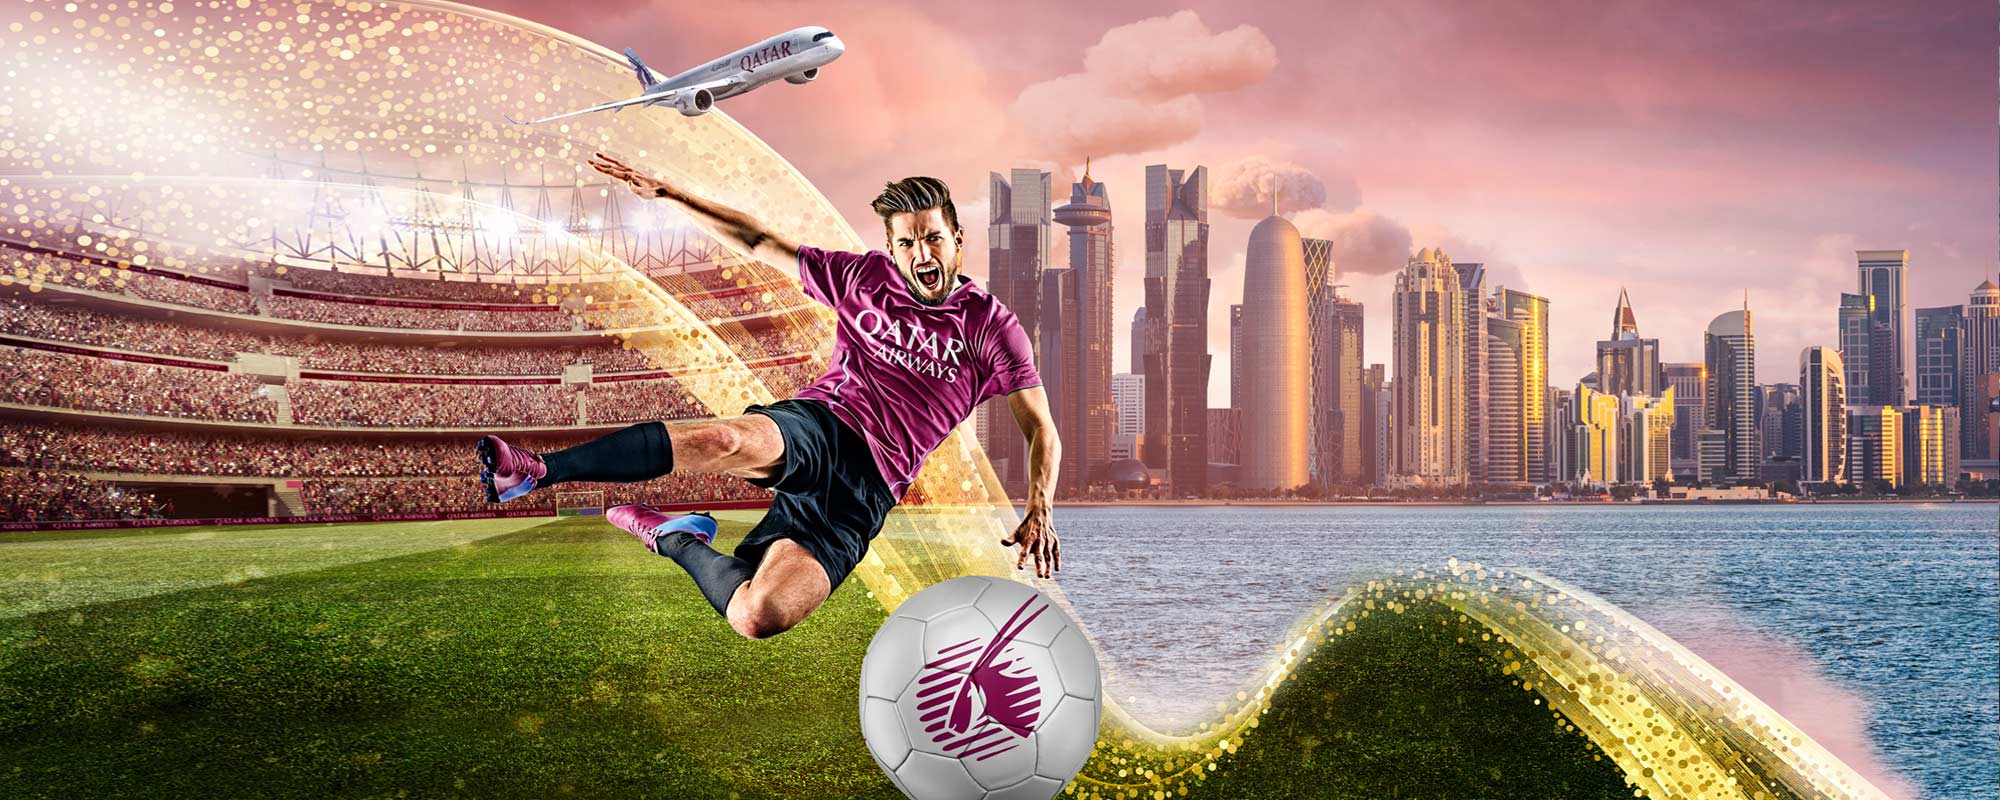 24th Arabian Gulf Cup Qatar 2019 Packages Holidays | Qatar Airways Holidays